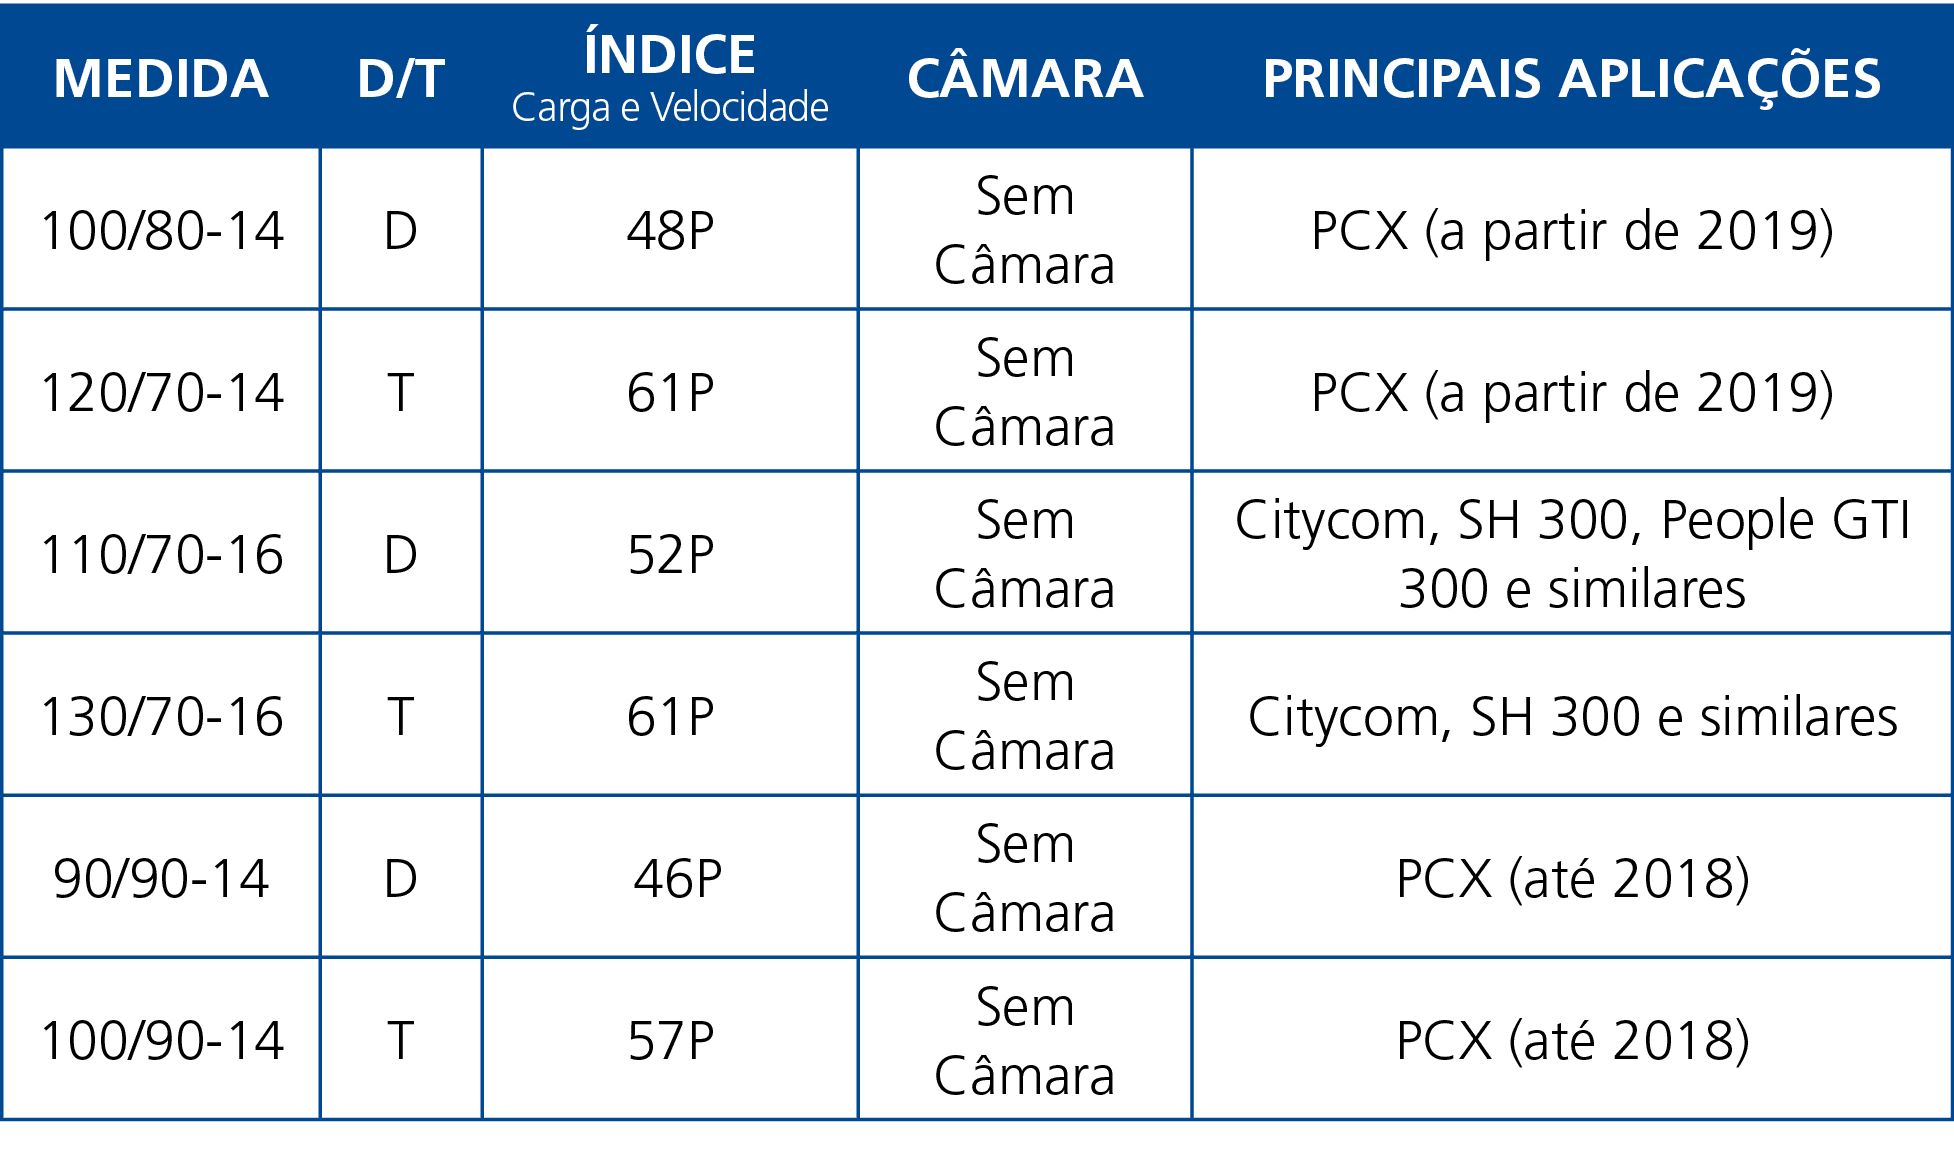 Medida,D T,Índice Carga e Velocidade,Câmara,Principais aplicações,100 80-14,D,48P,Sem Câmara,PCX (a partir de 2019),1   